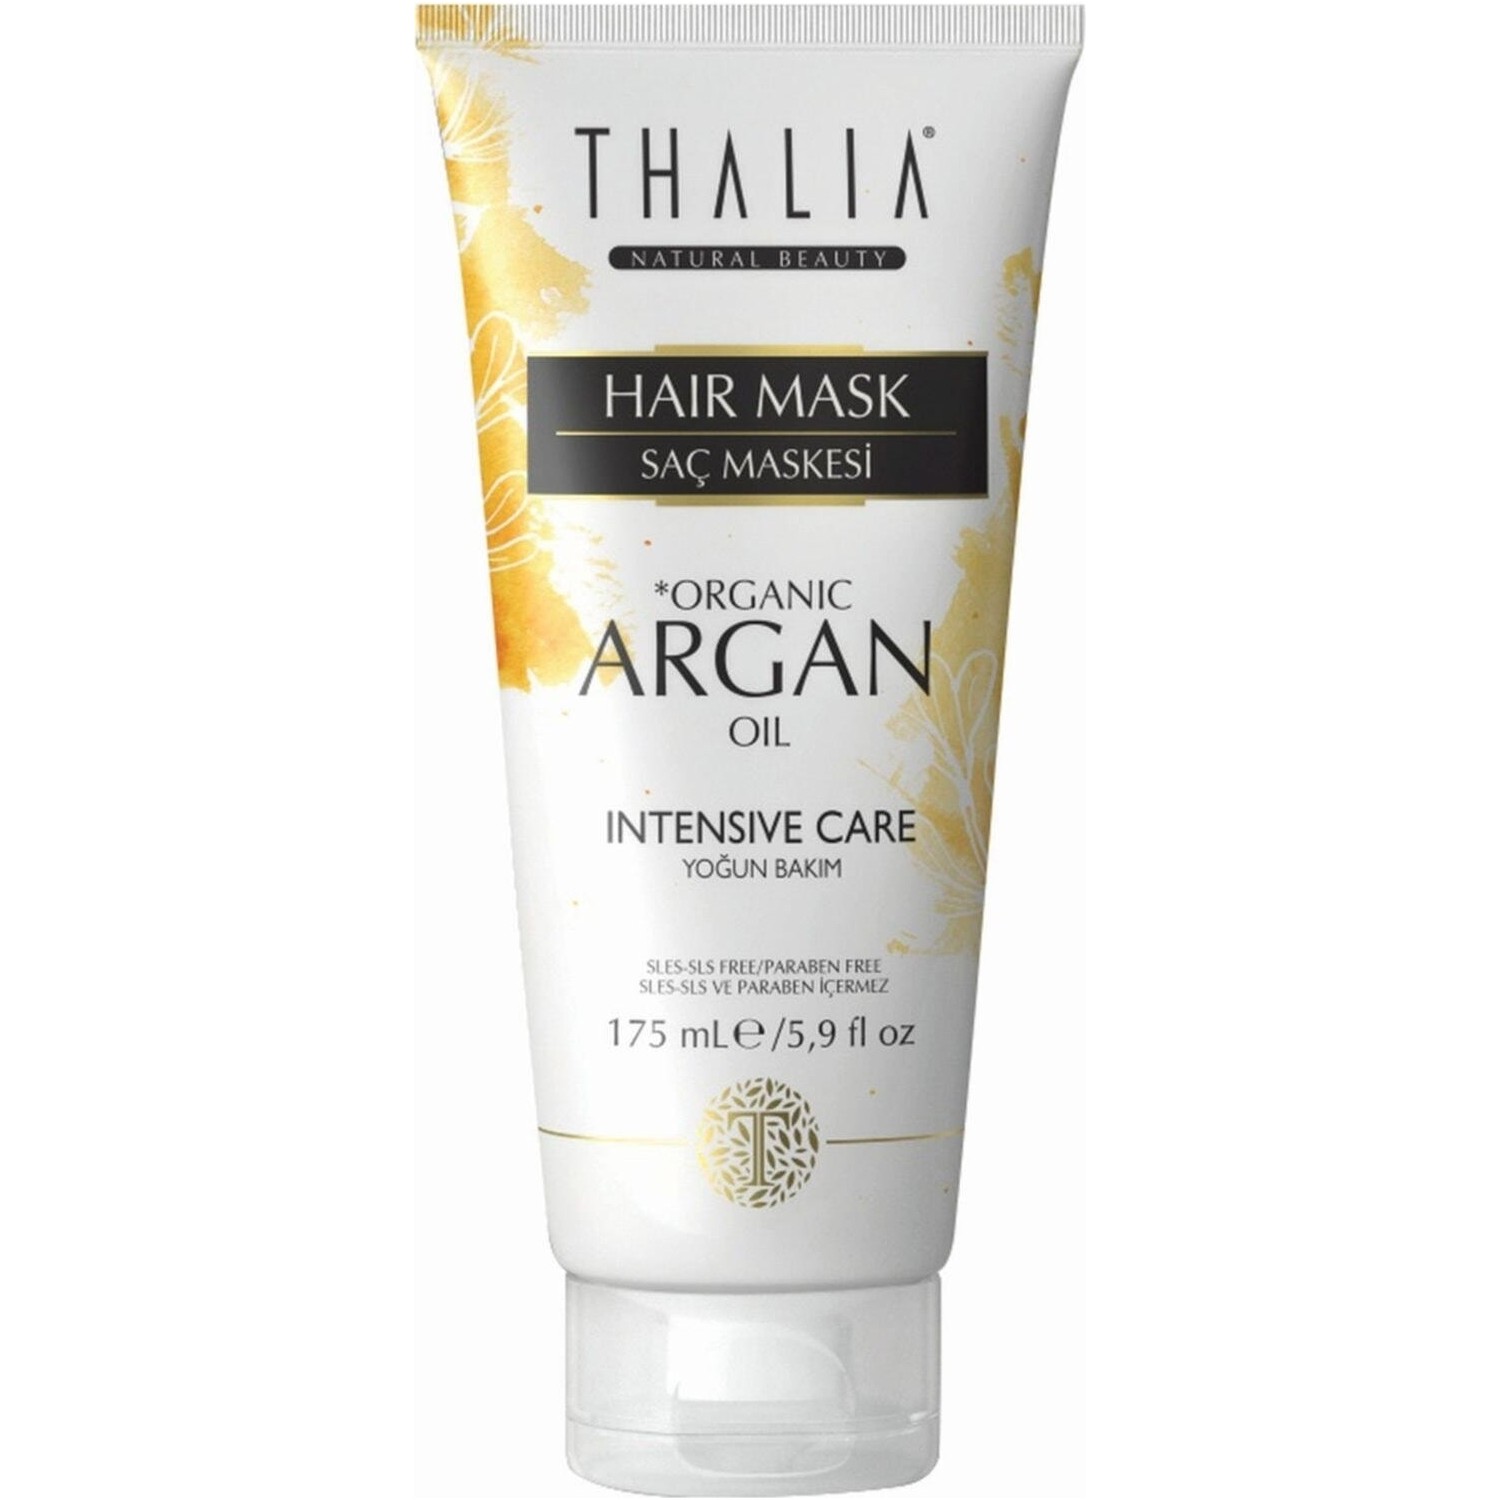 Увлажняющая маска Thalia Organic Argan Oil для волос, 175 мл крем краска для волос с аргановым маслом 10 45 яркий блондинзолотисто медный 100 мл